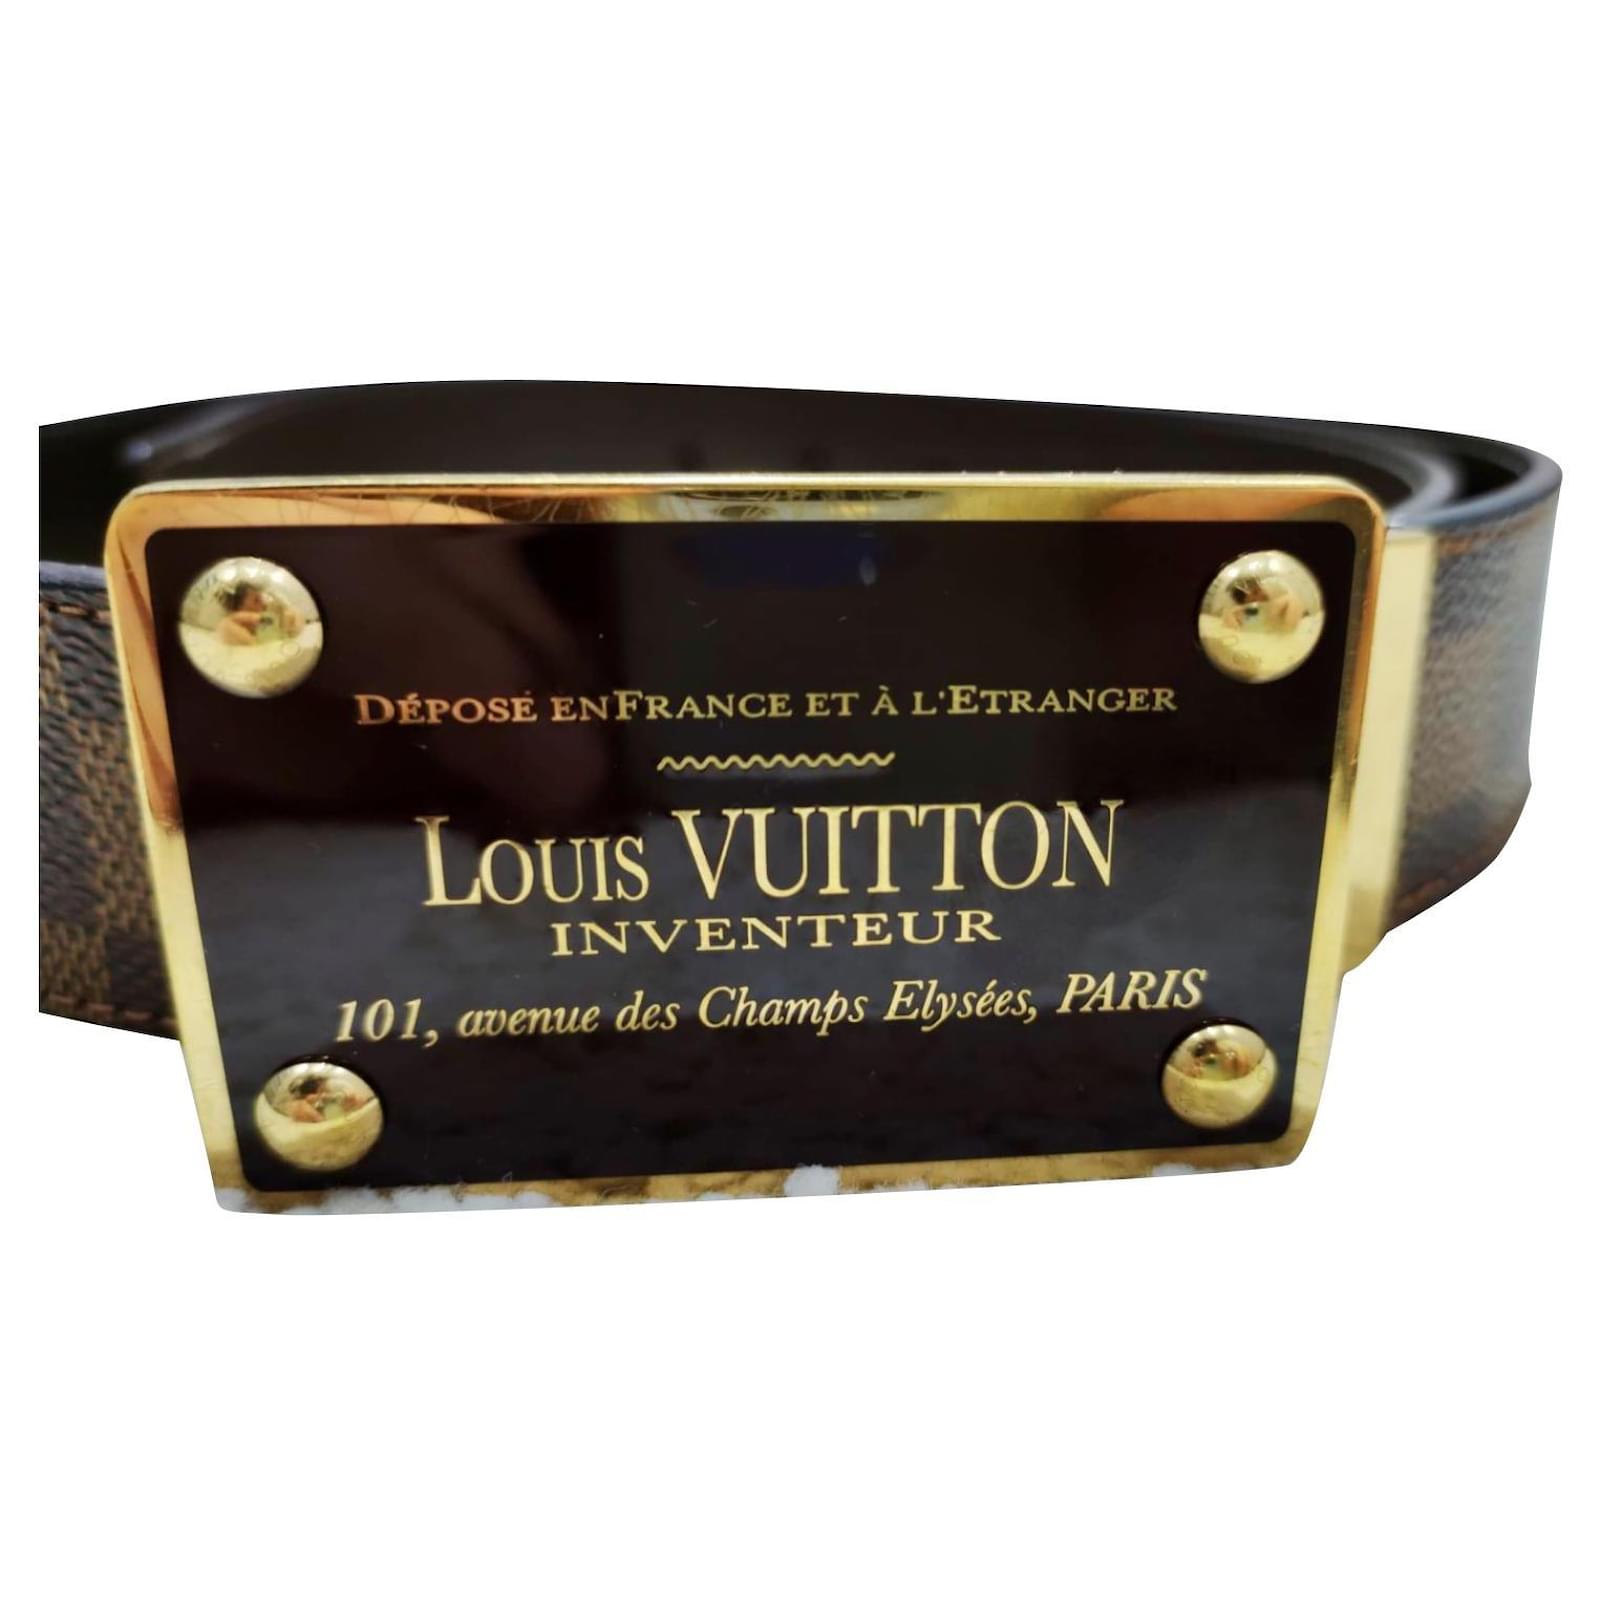 Louis Vuitton : Les Meilleurs Conseils Pour En Reconnaître L